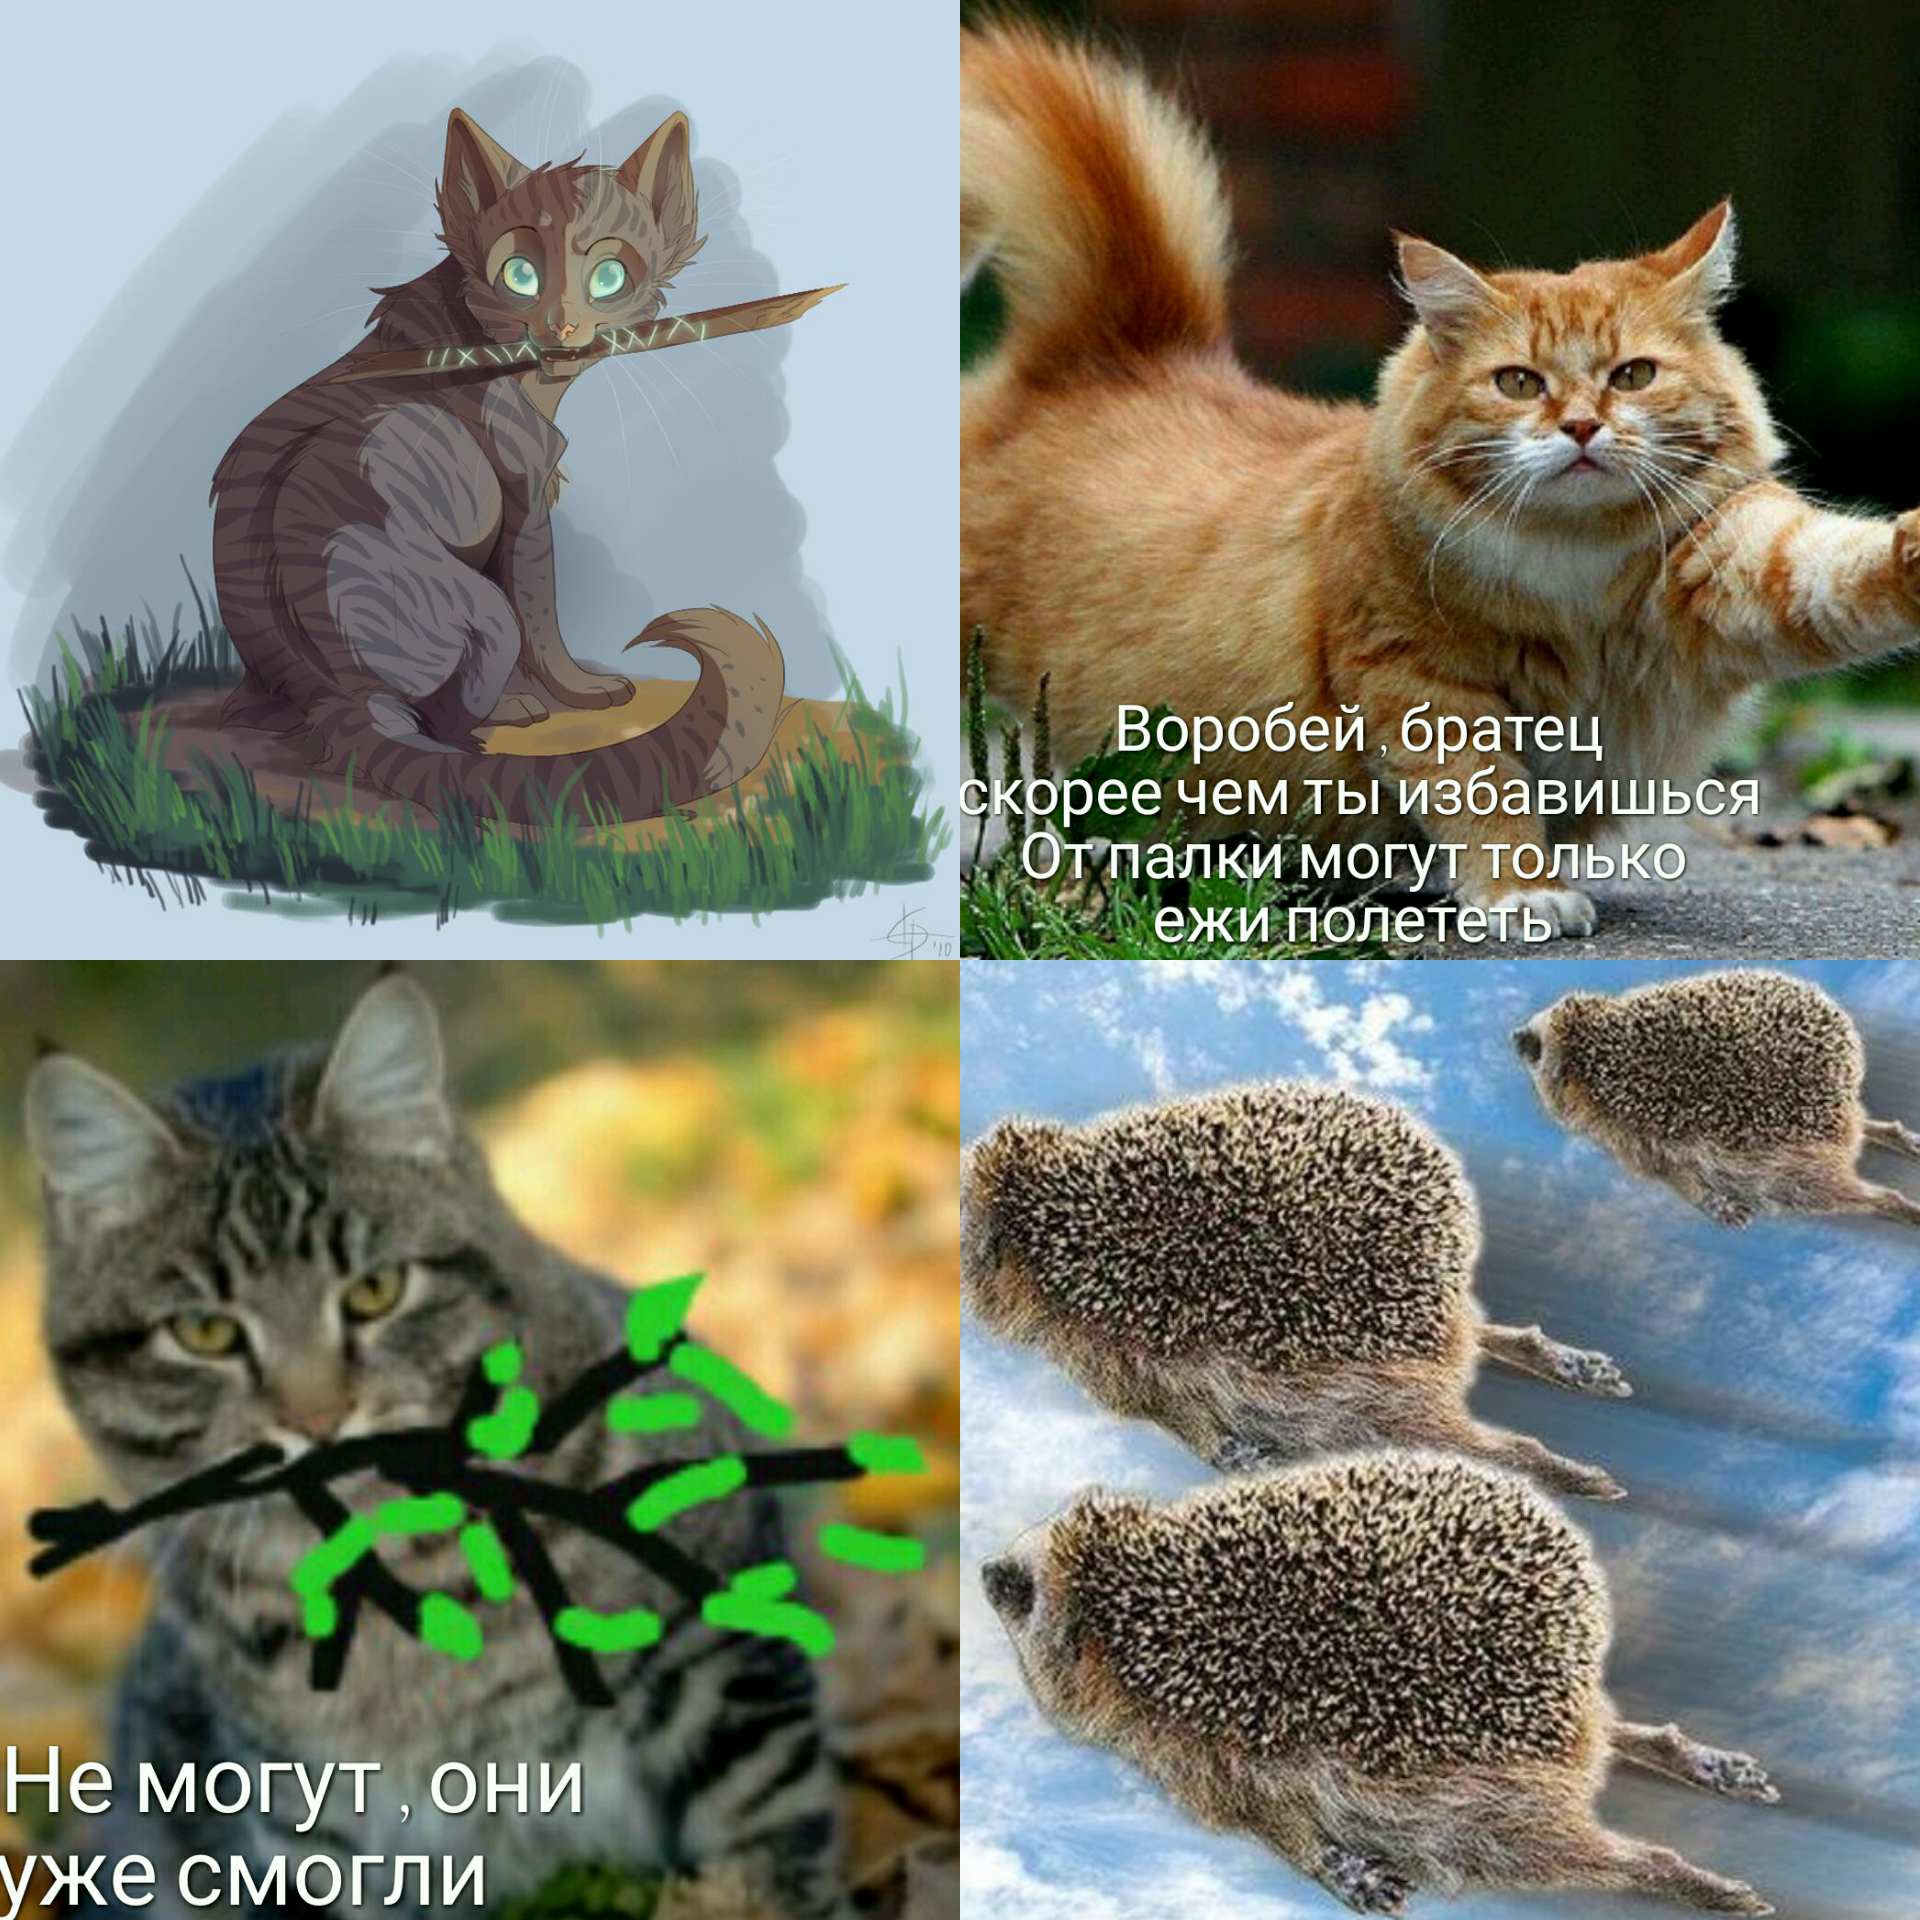 коты воители приколы и мемы - мемные аватарки | Мемы, Кот-воитель, Кот